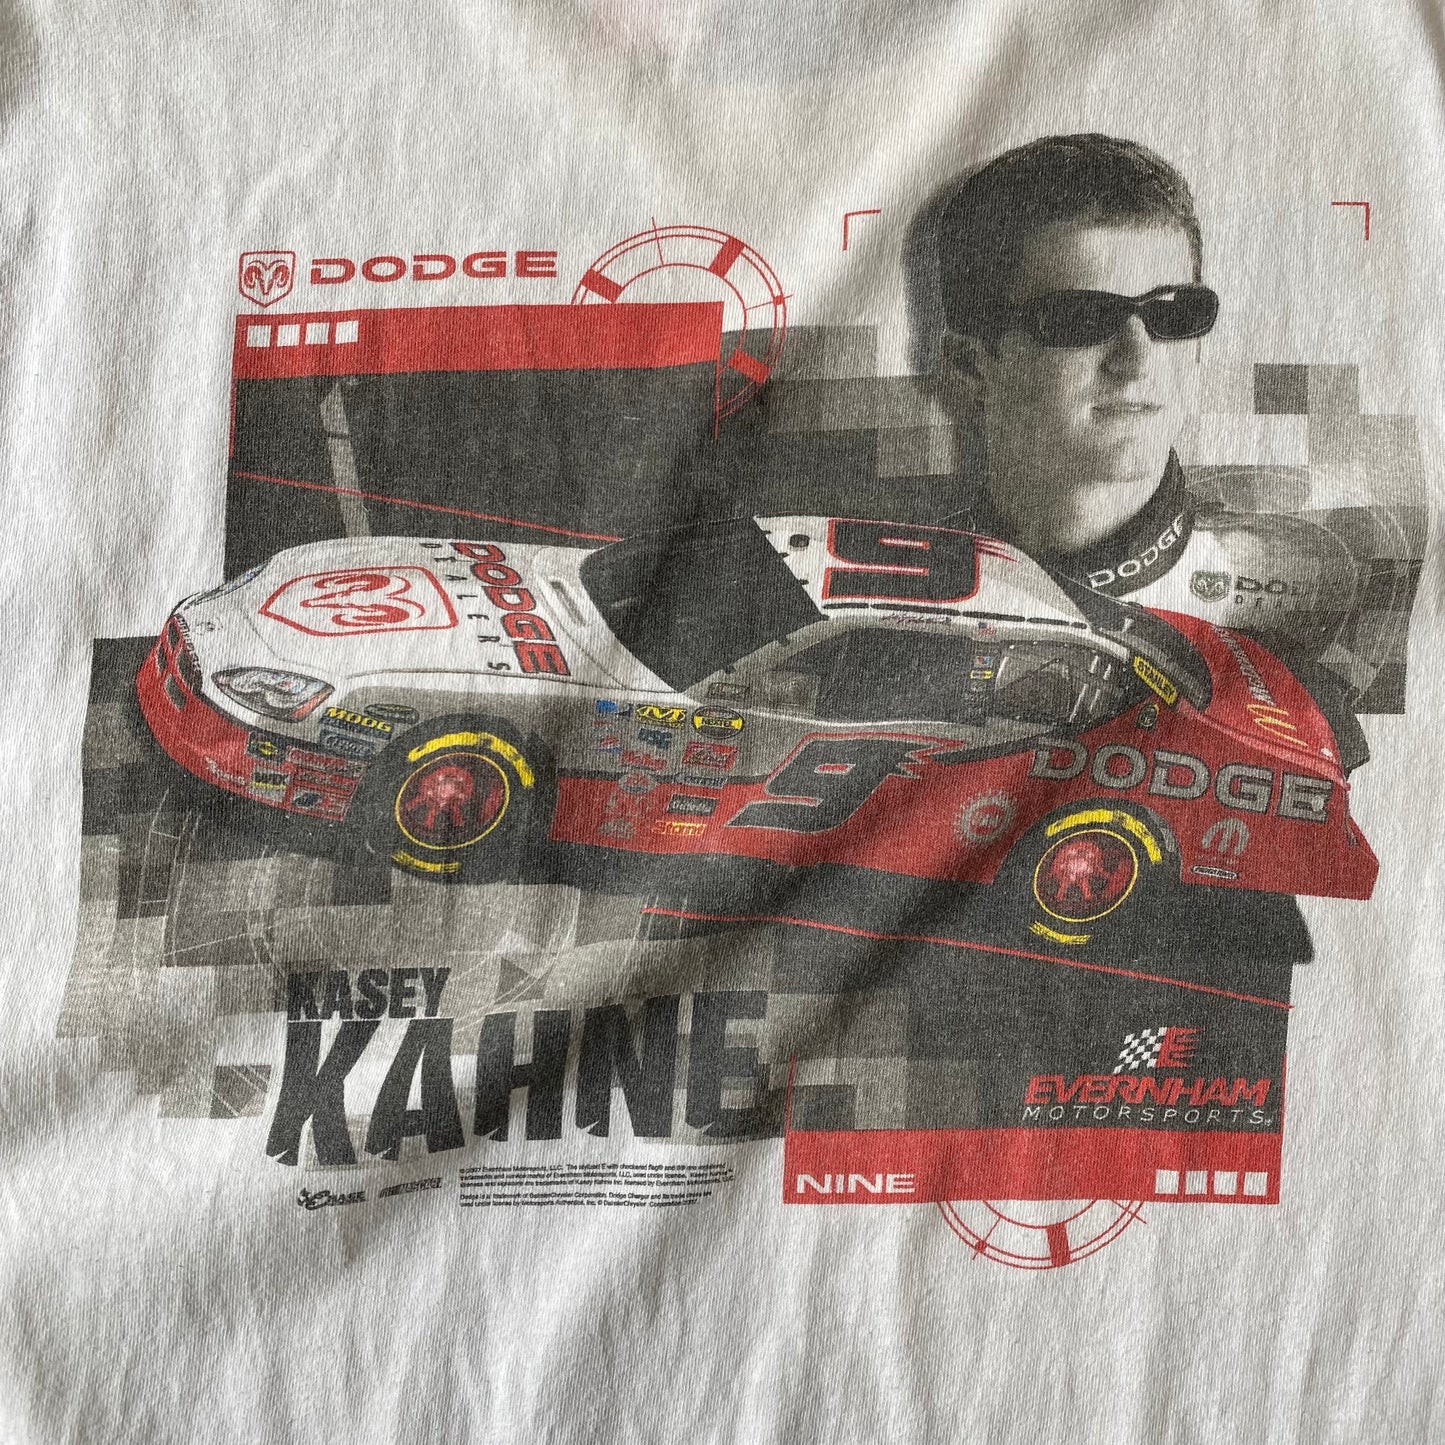 00's NASCAR "KASEY KANHE" RACING POCKET T-SHIRT